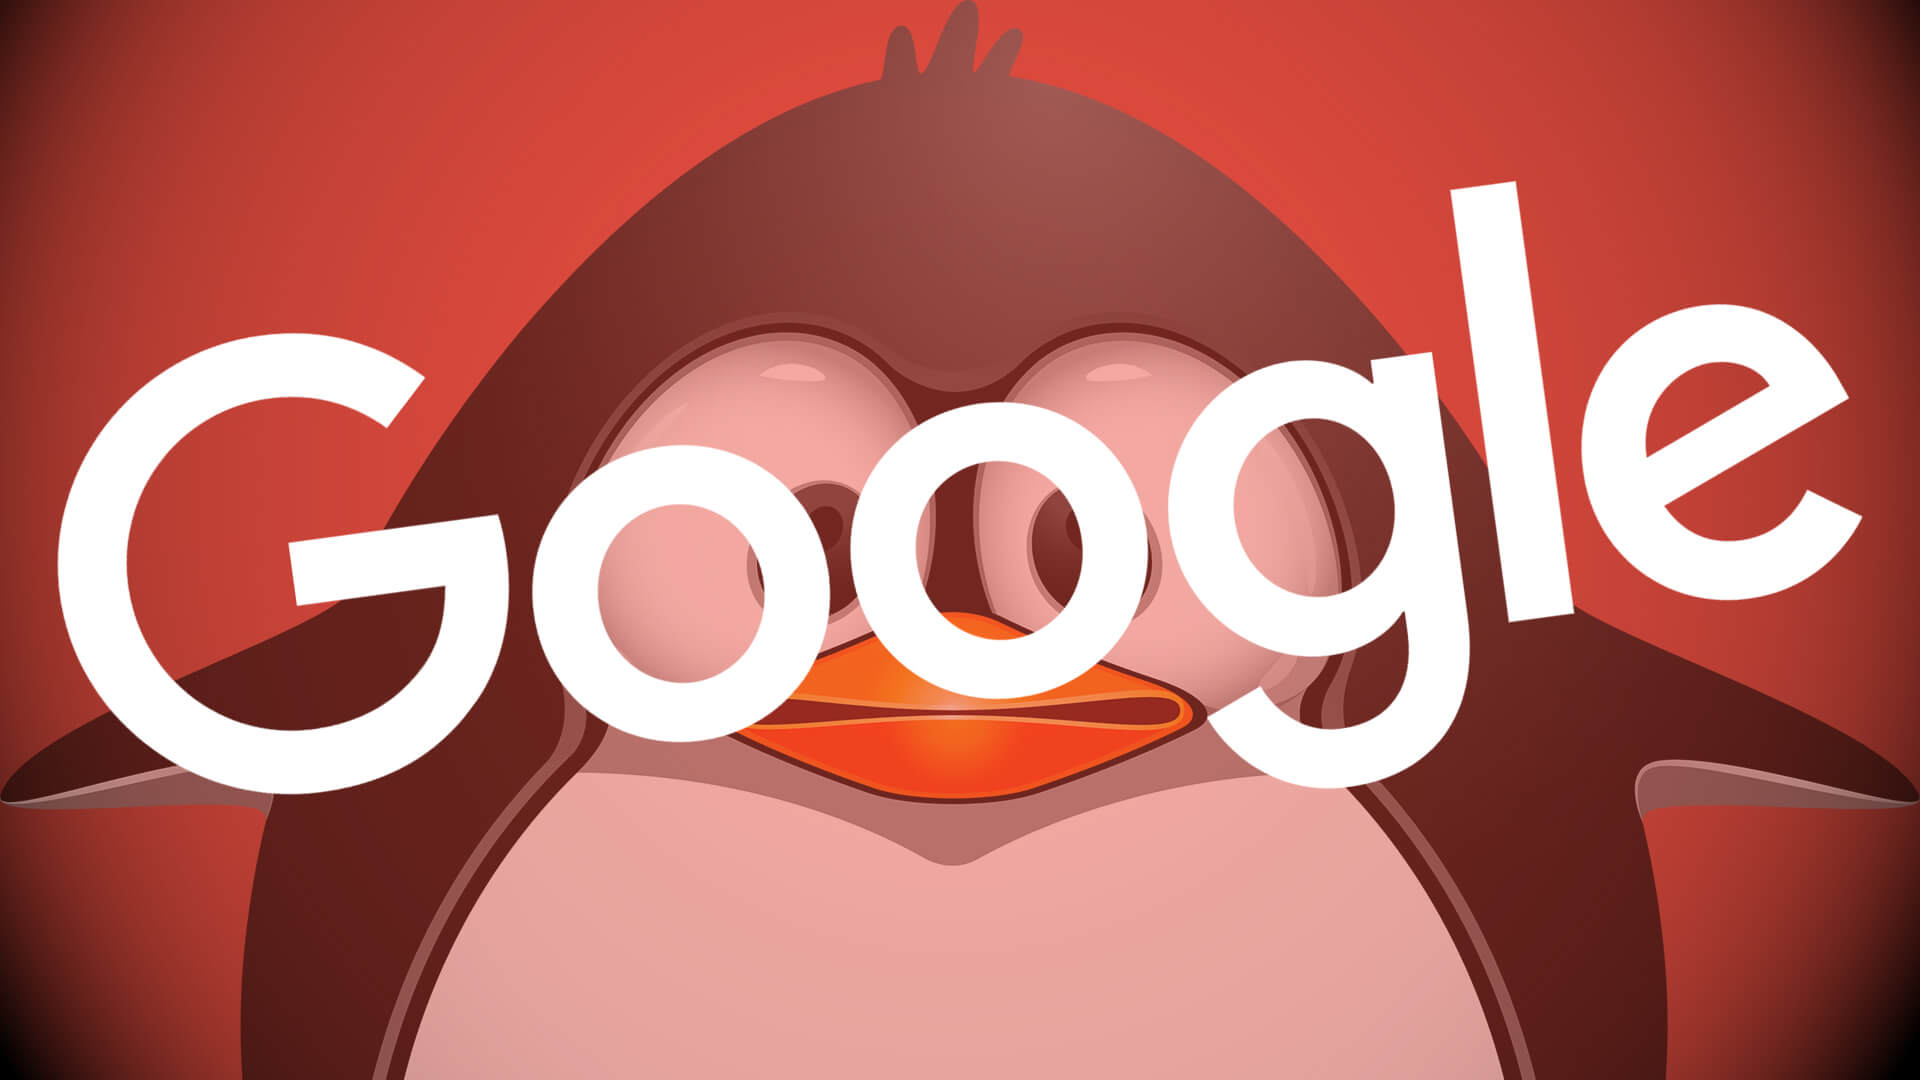 Google Penguin có trừng phạt các link xấu hay không?